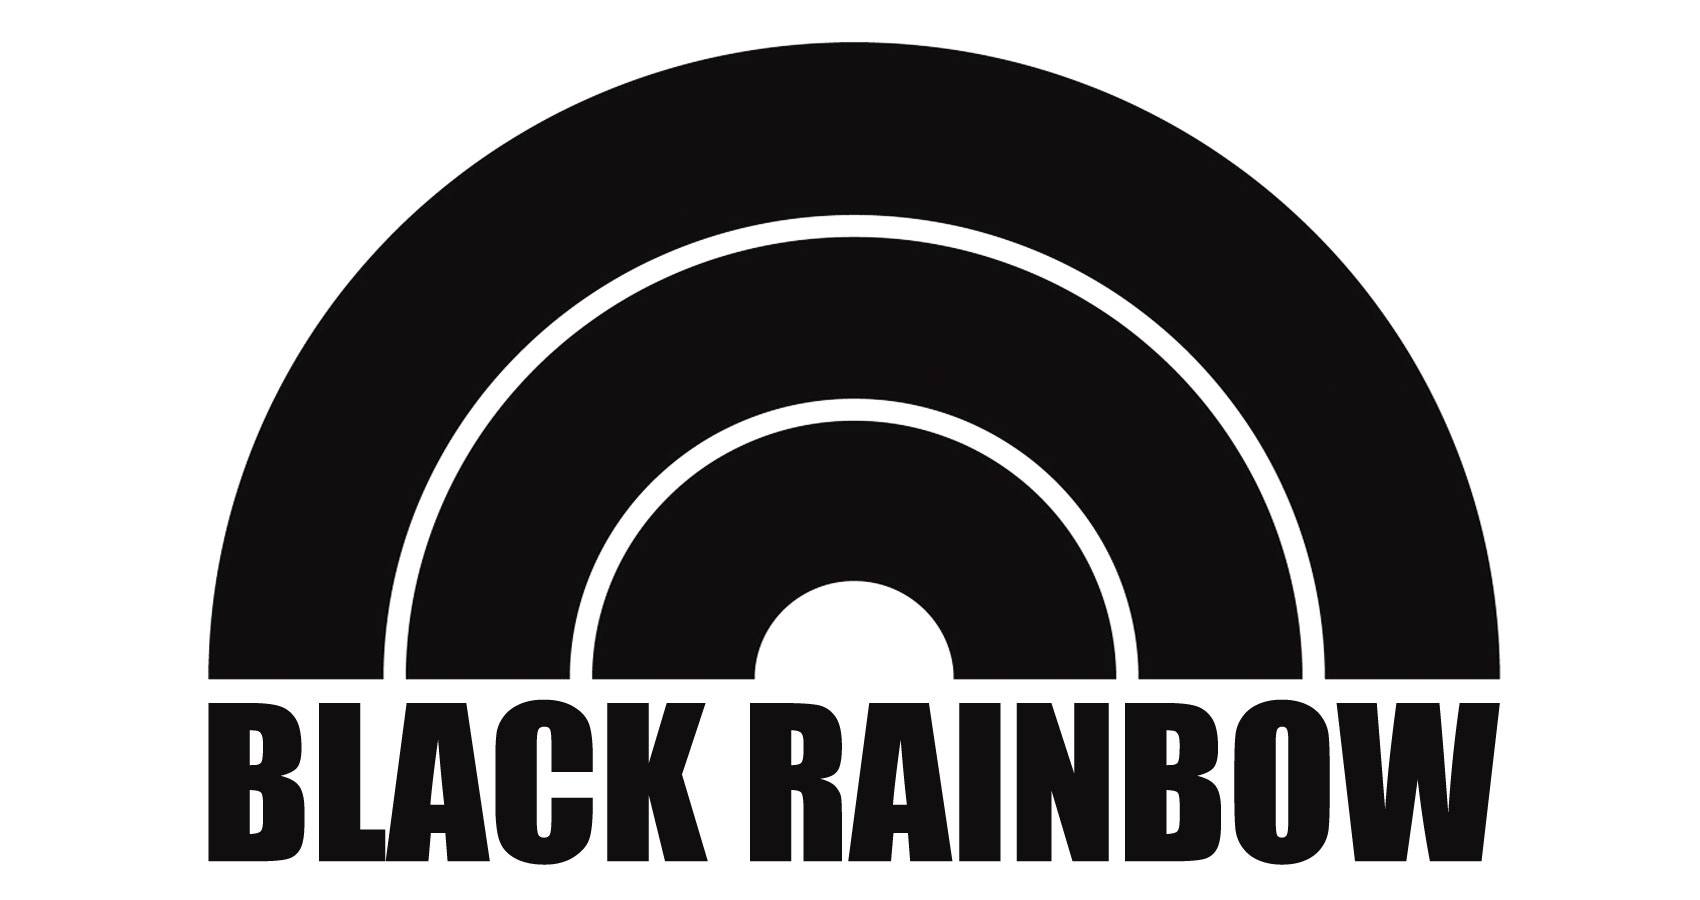 Black Rainbow written by Jecht Fair at Spillwords.com